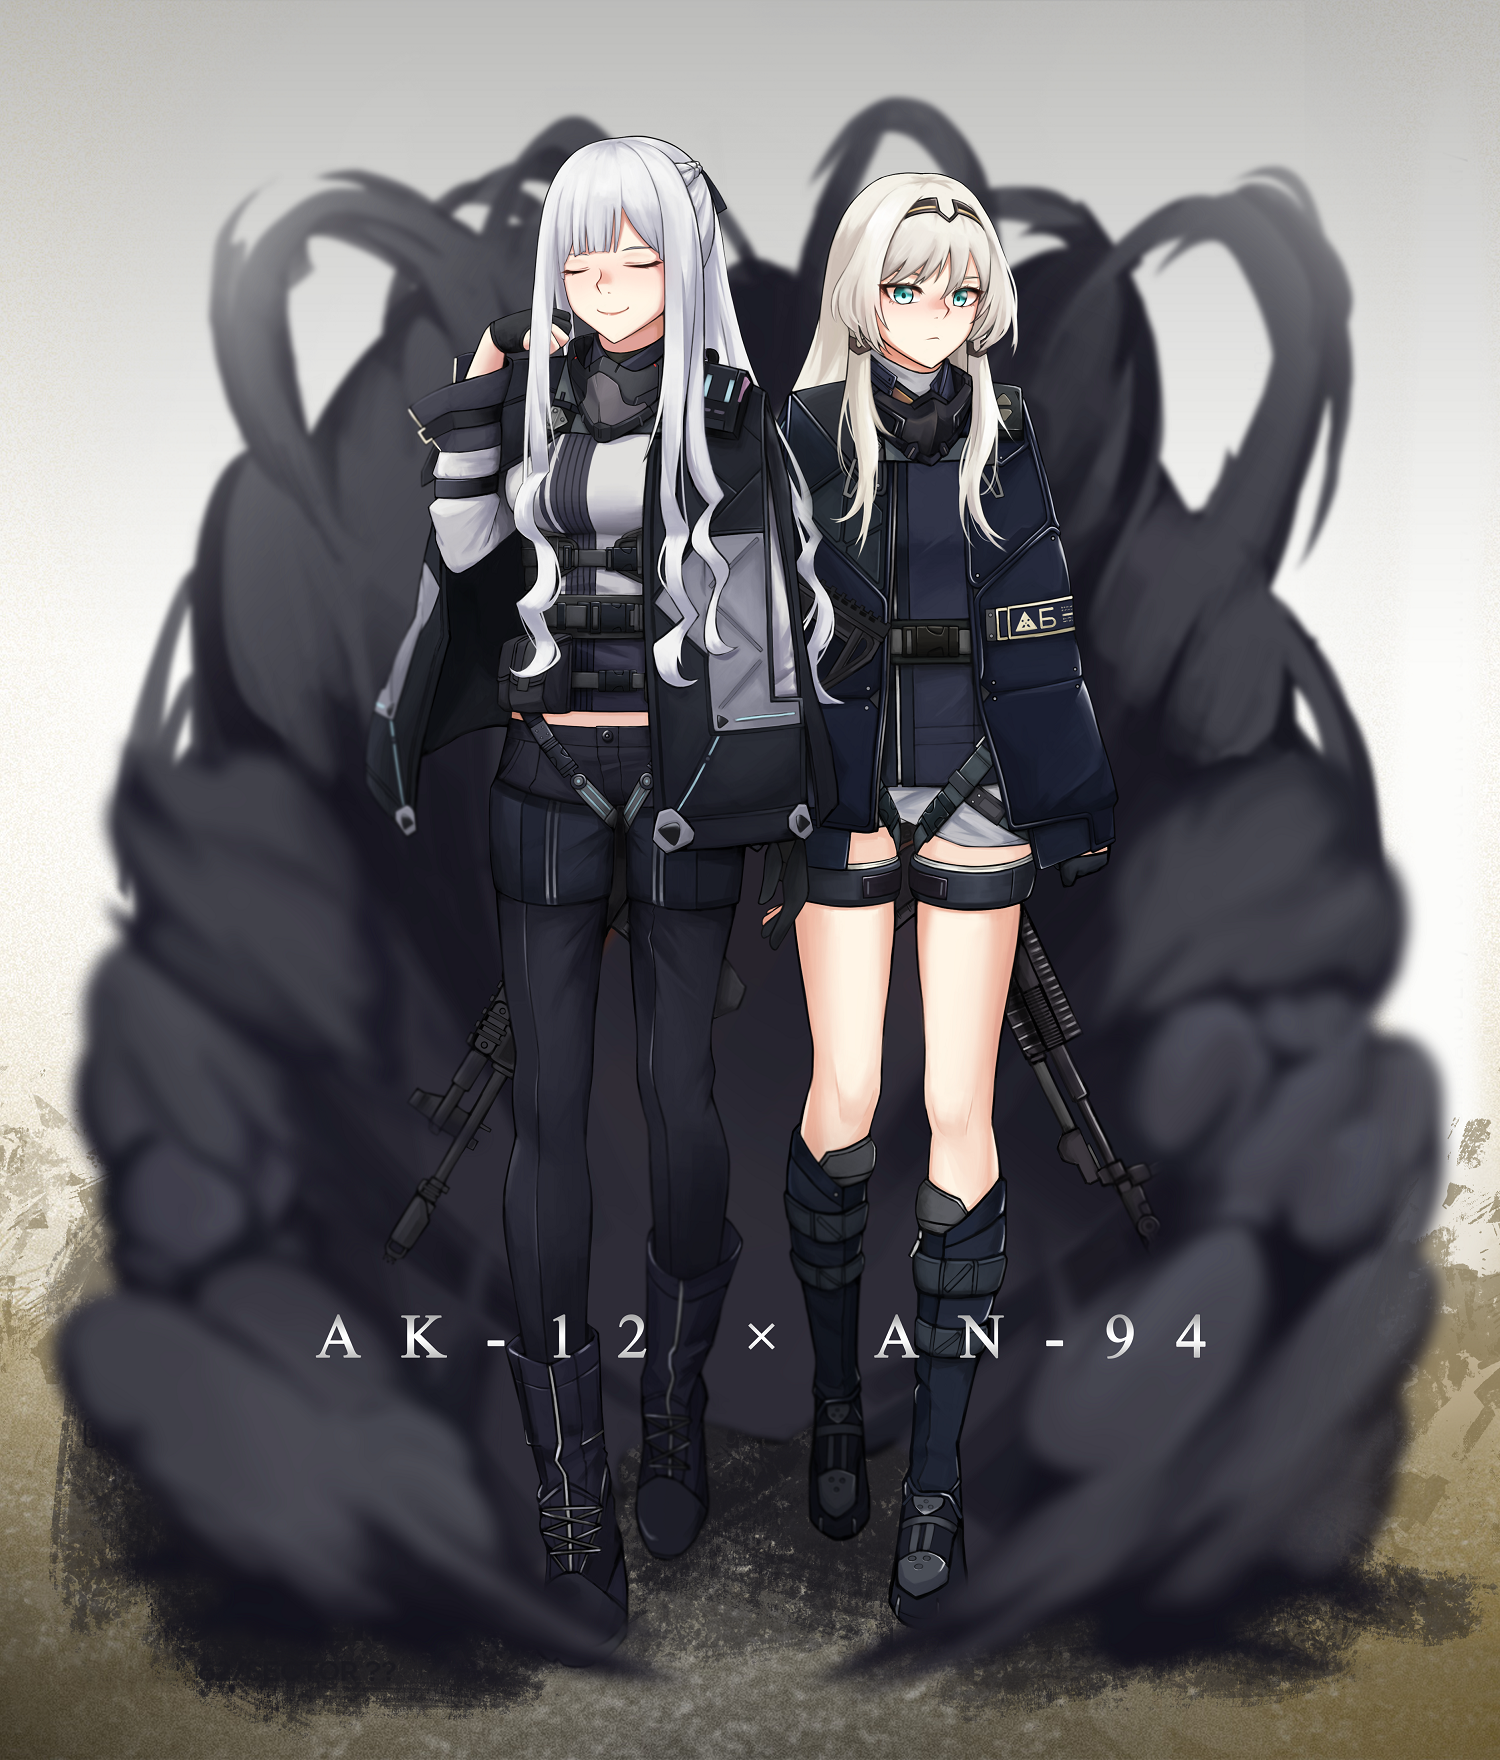 AK-12, AN-94